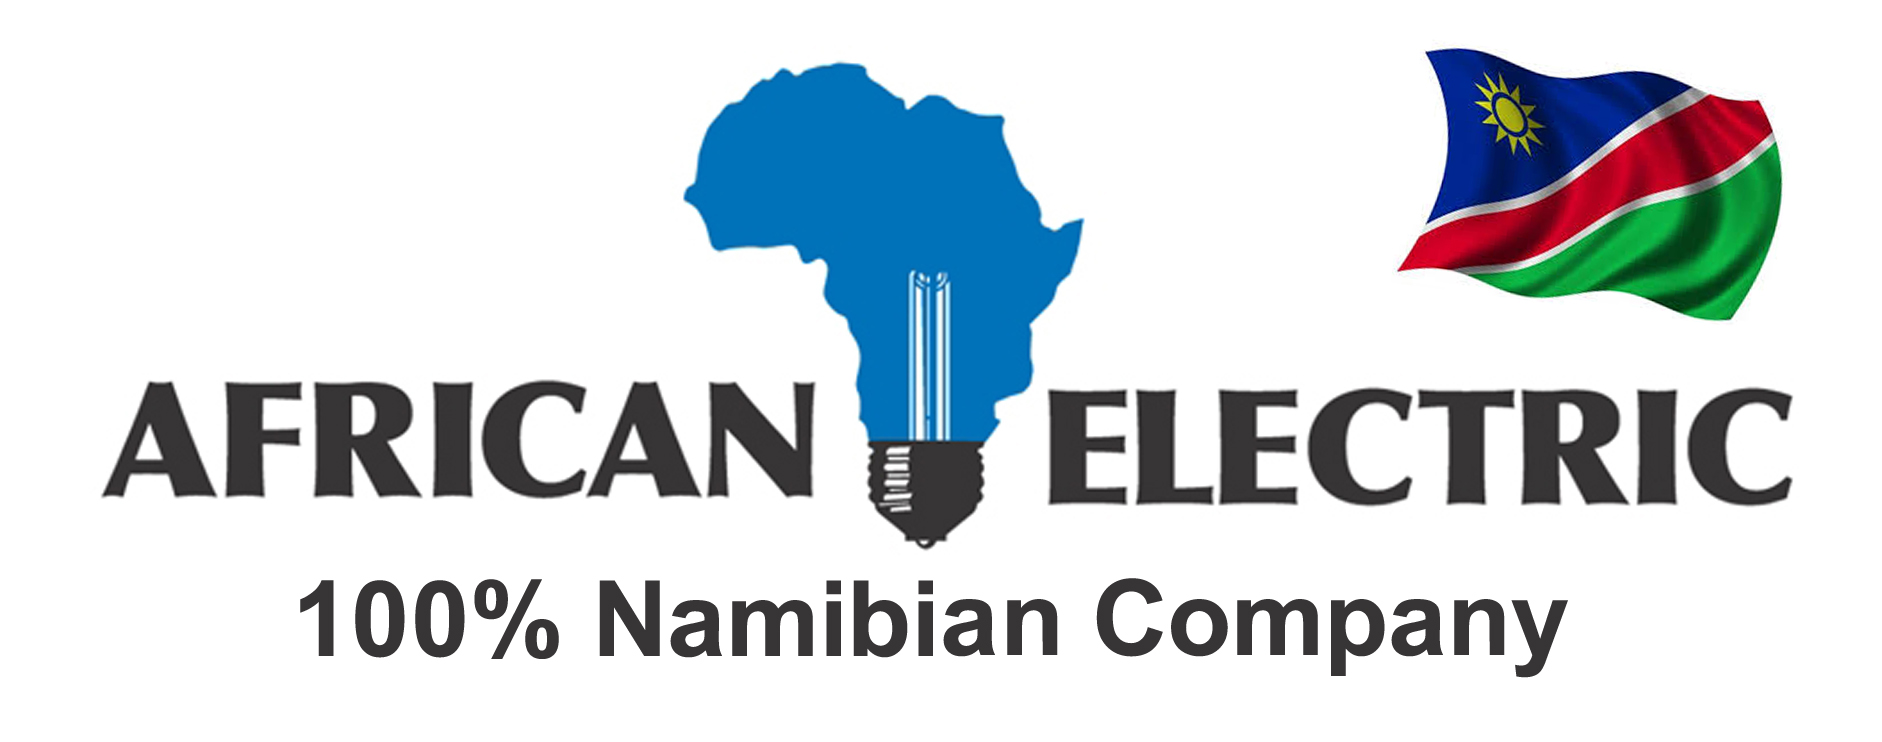 Logo AfricanElectric 100% Namibian